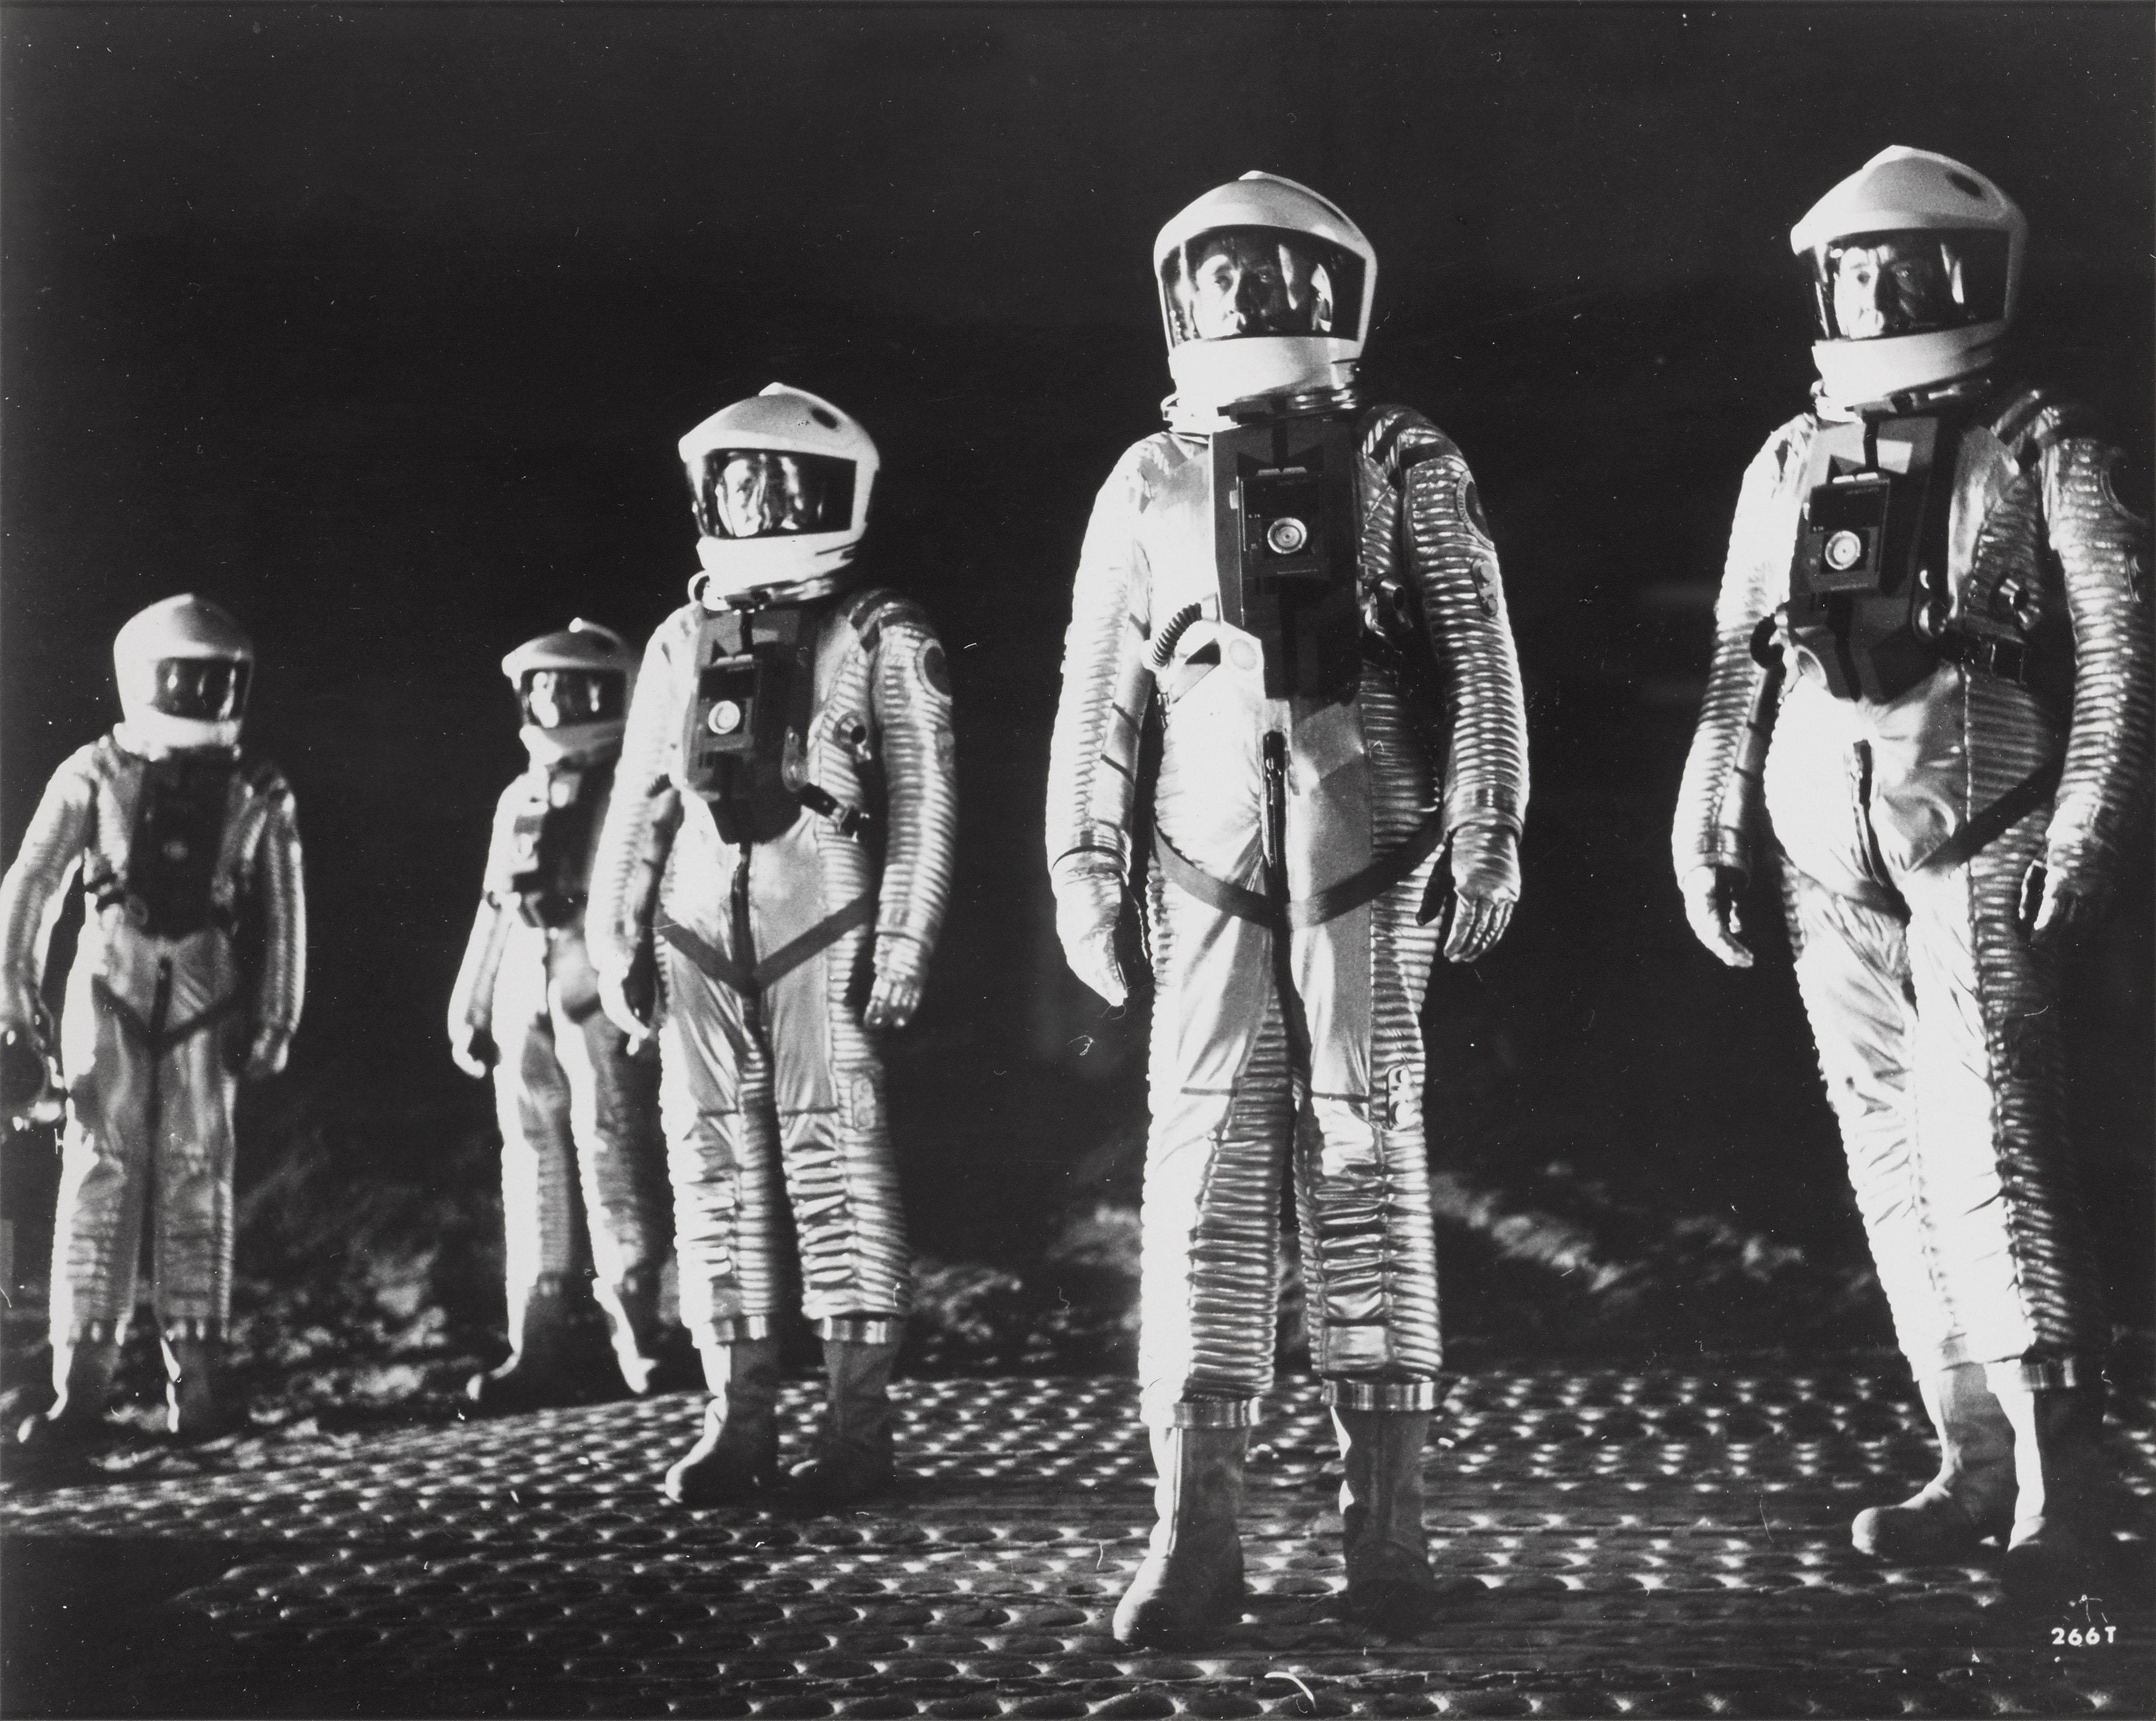 Photo originale du film de science-fiction de Stanley Kubrick, considéré comme l'un des films de science-fiction les plus influents de tous les temps.
Au verso de la pièce se trouve une information originale envoyée avec la photo à l'agence de